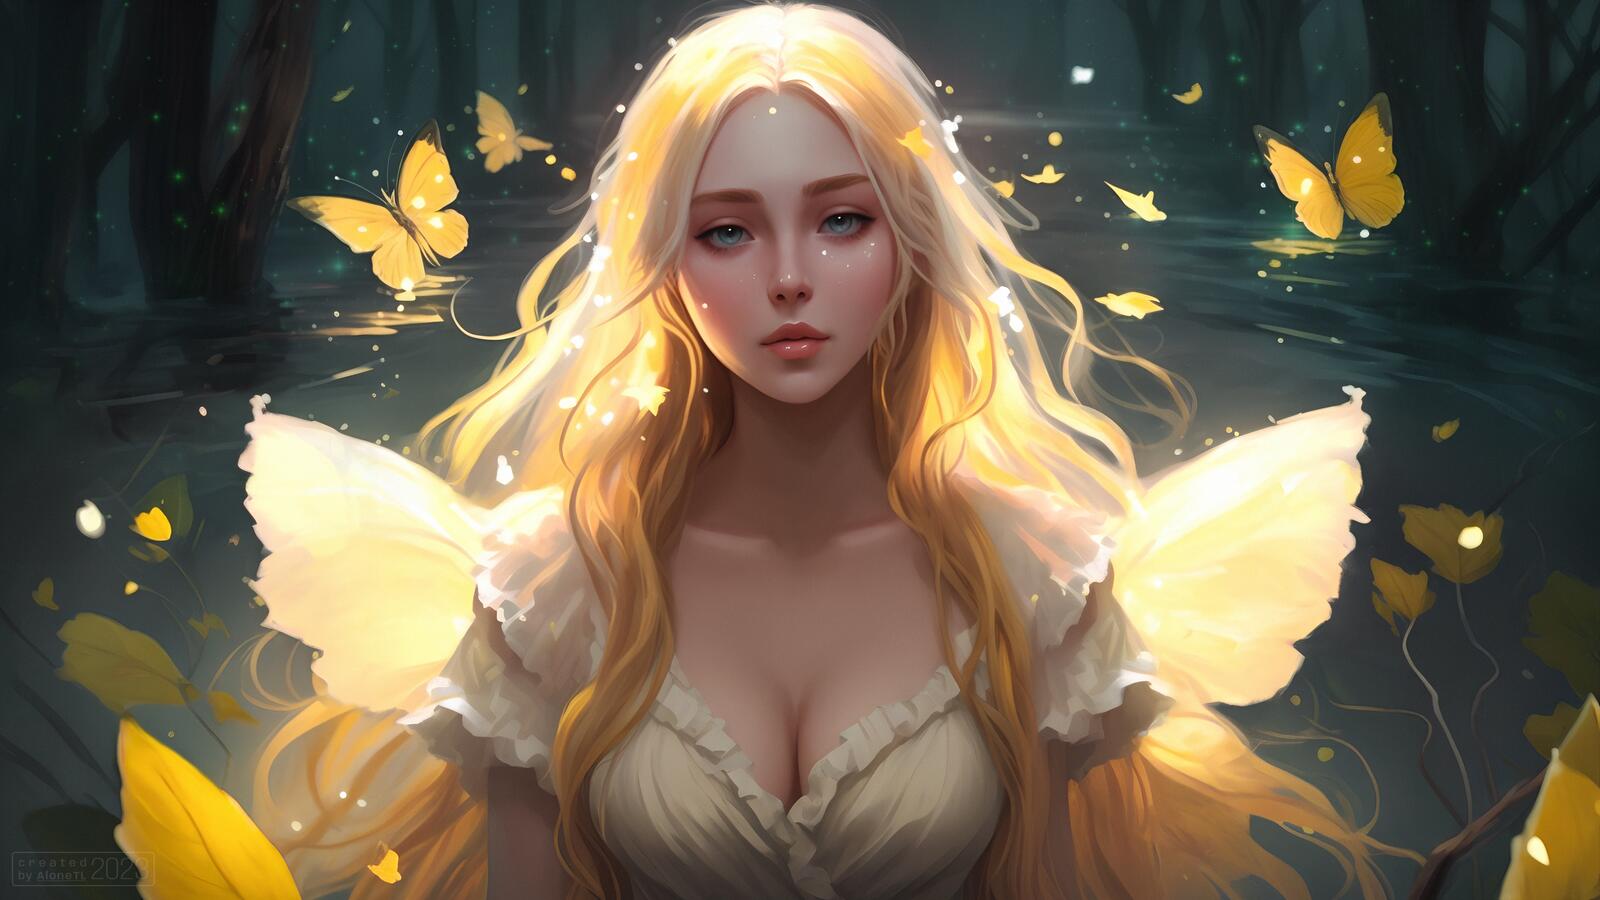 Бесплатное фото Фэнтези девочка бабочка в желтом платье